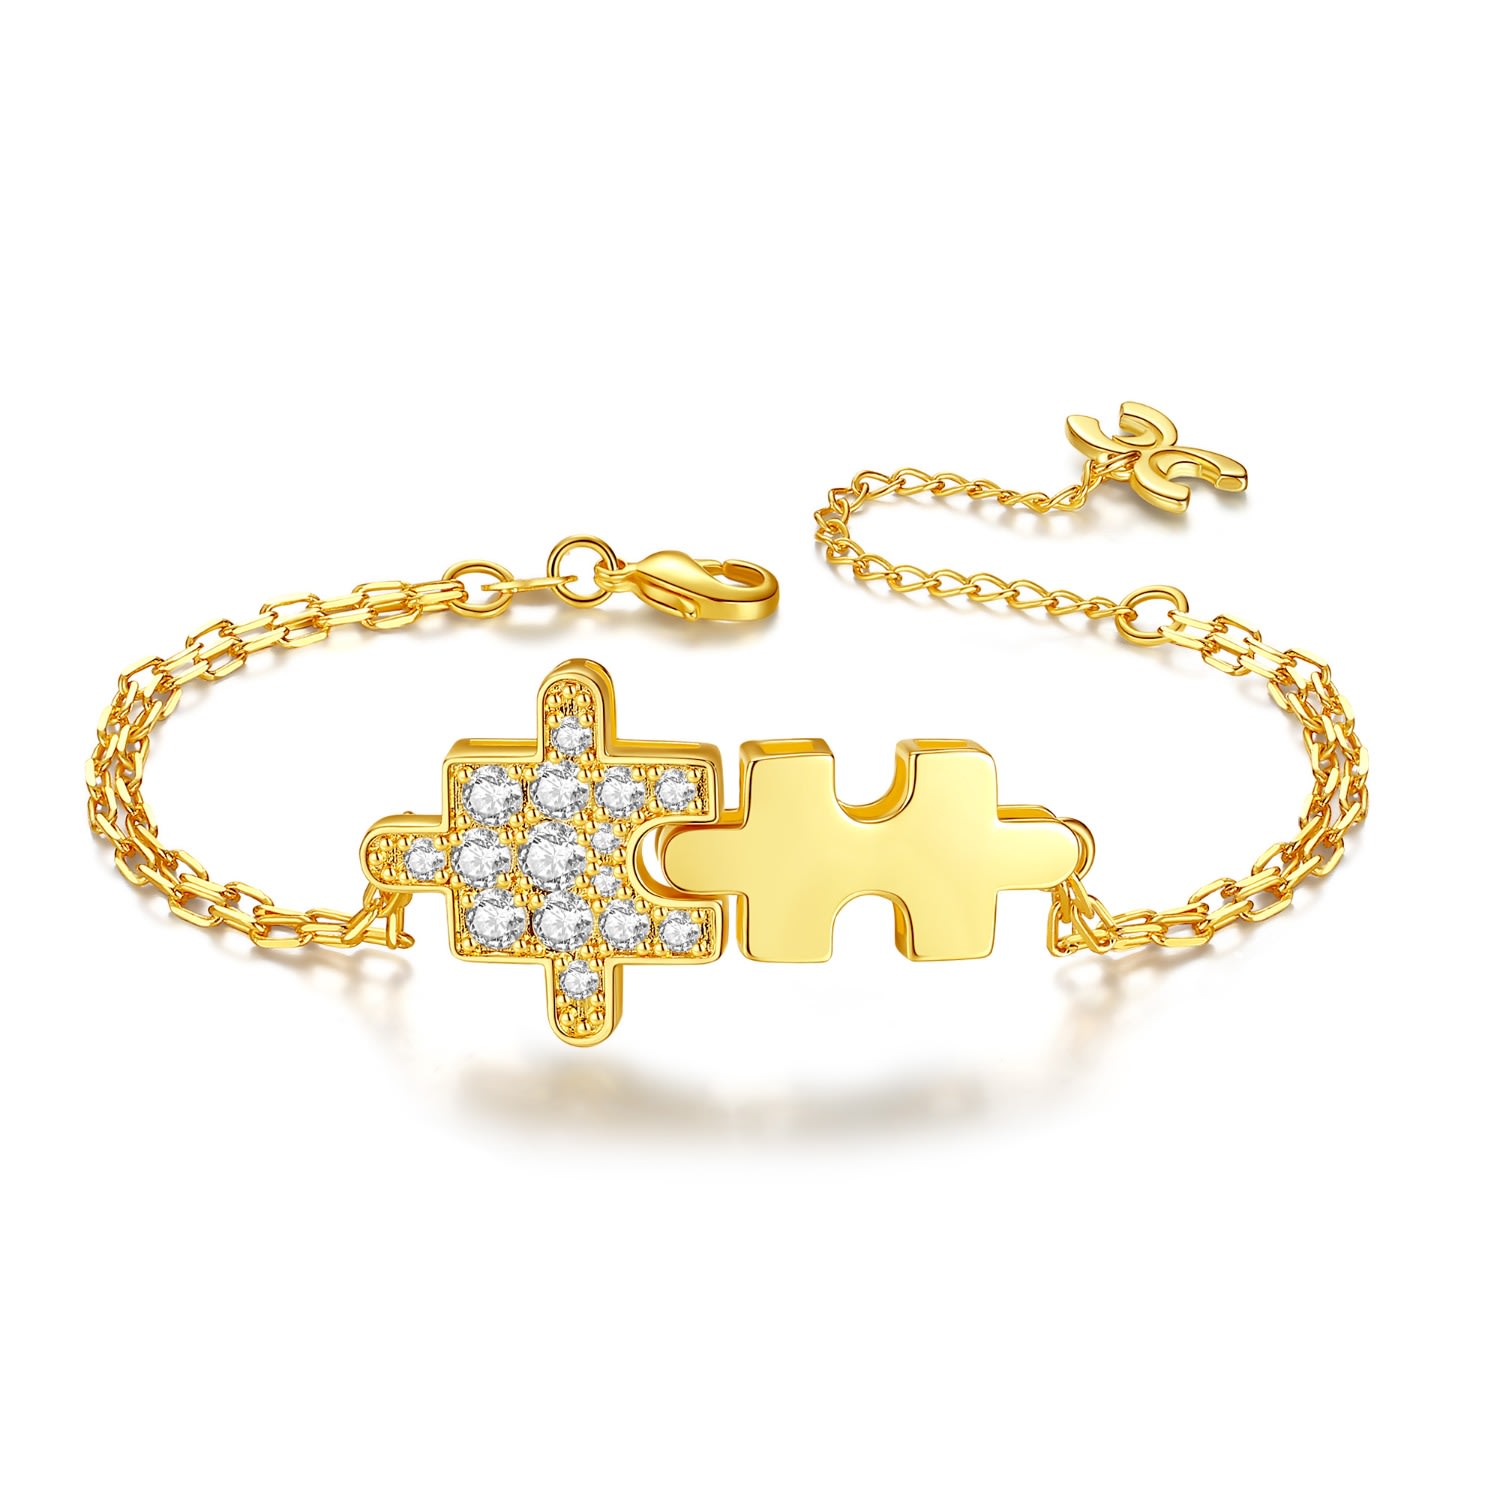 Shop Classicharms Women's Gold Sparkling Jigsaw Puzzle Bracelet